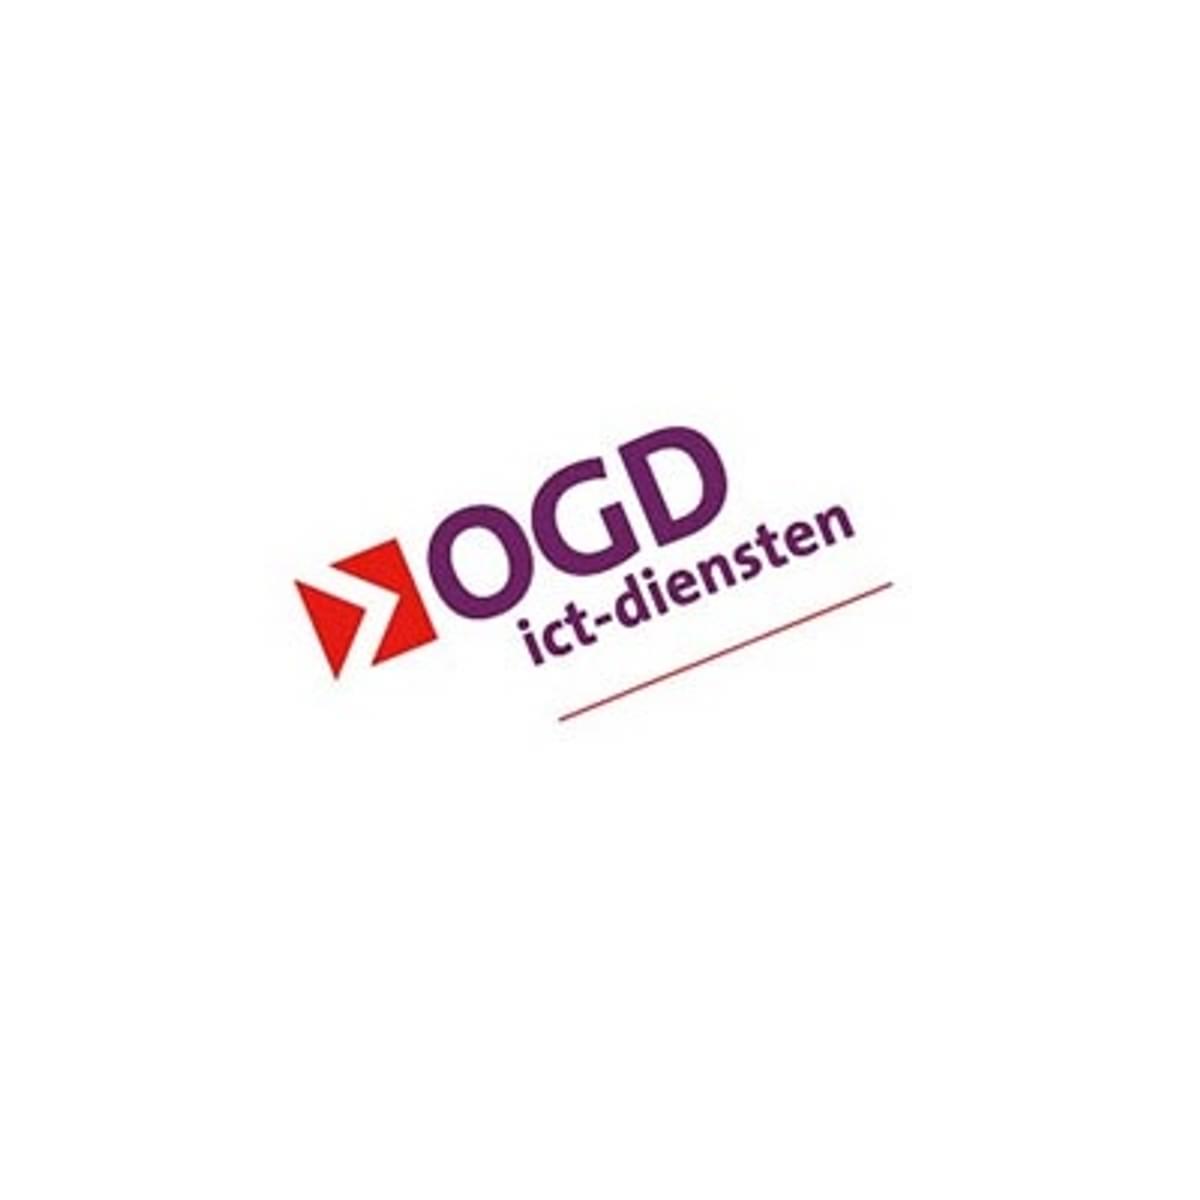 OGD ict-diensten brengt gemeente Velsen naar de cloud image